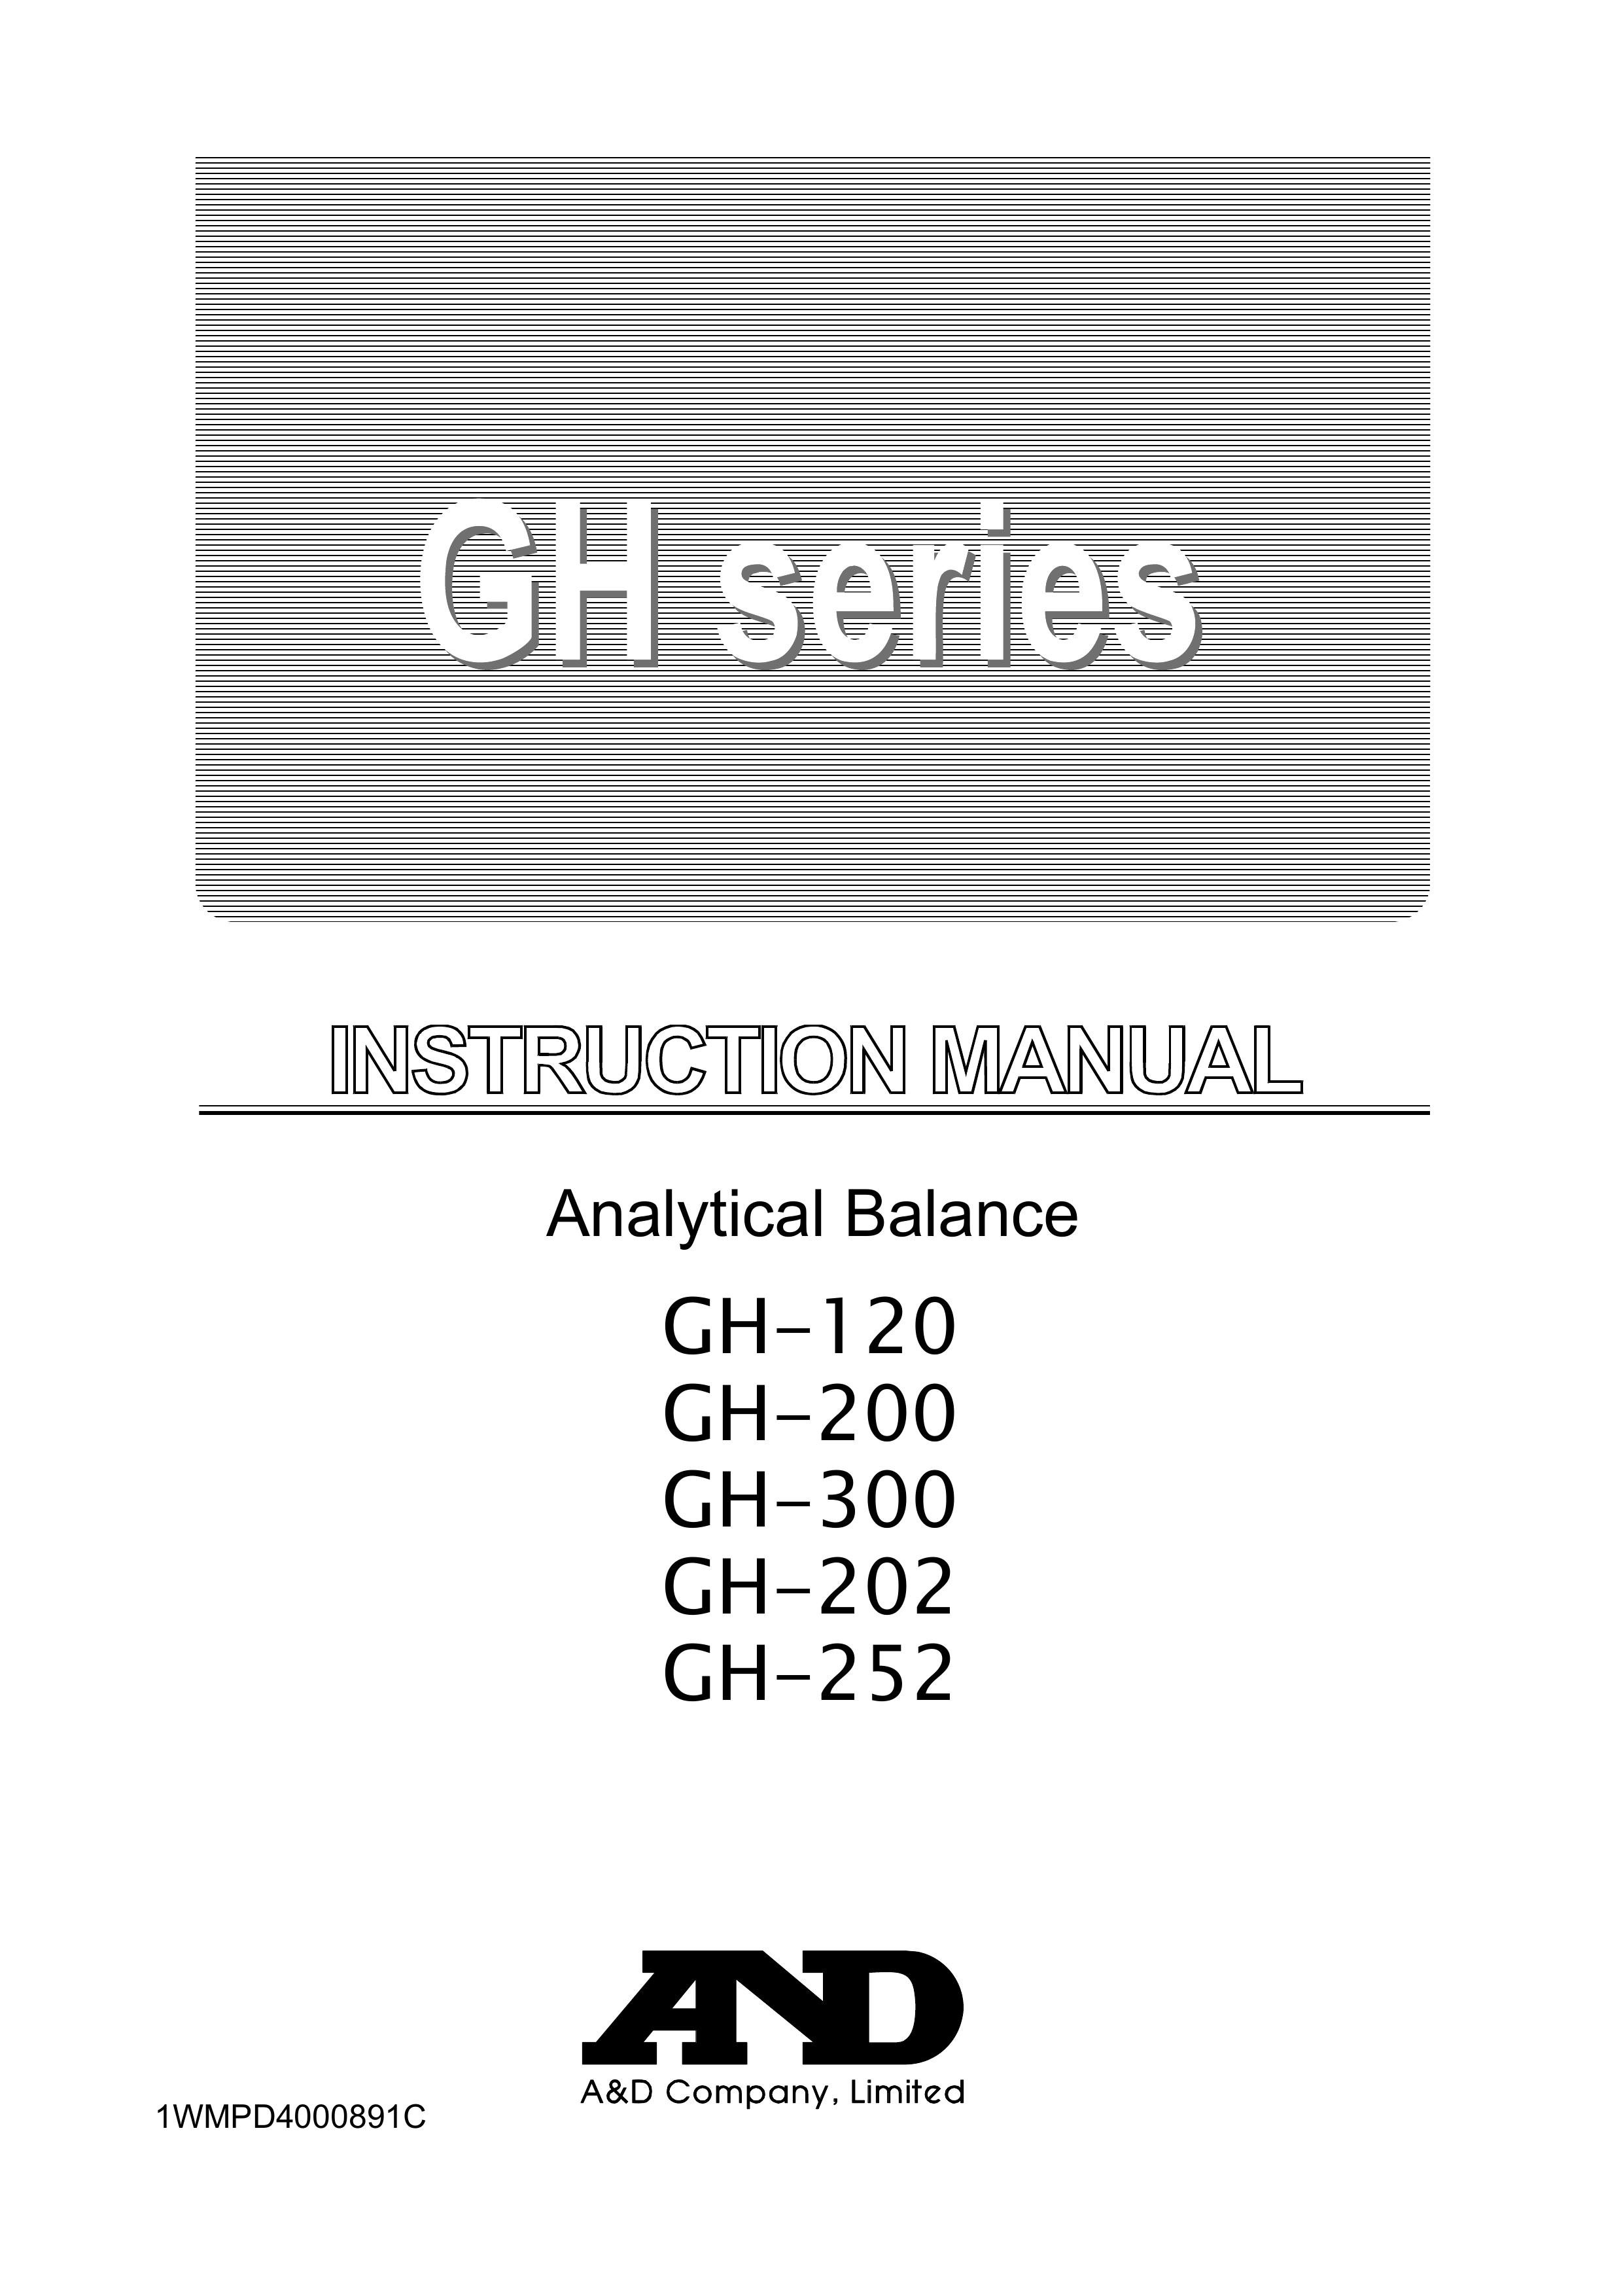 A&D GH-120/GH-200/GH-300/GH-202/GH-252 Scale User Manual